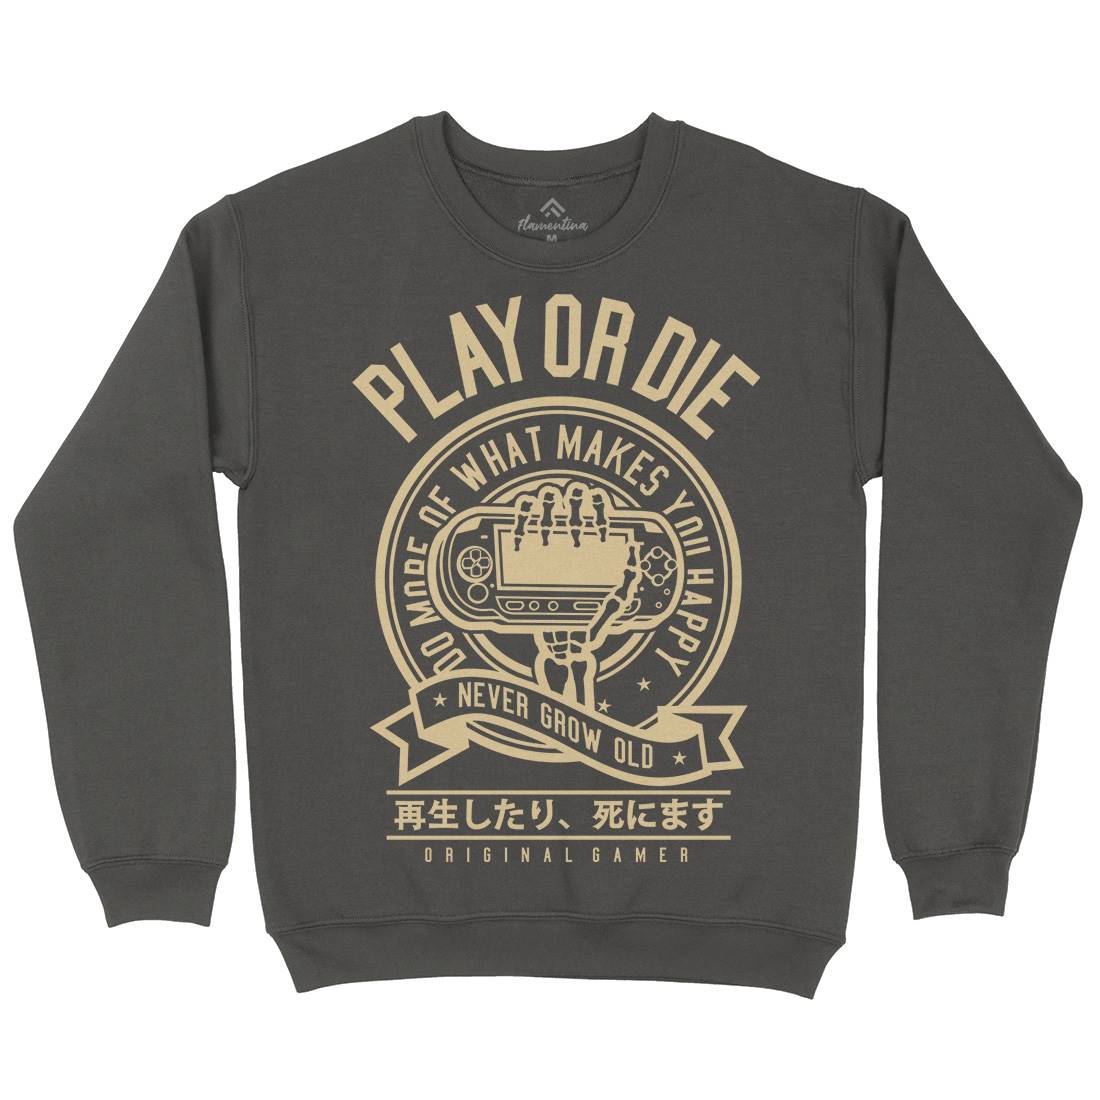 Play Or Die Kids Crew Neck Sweatshirt Geek A262